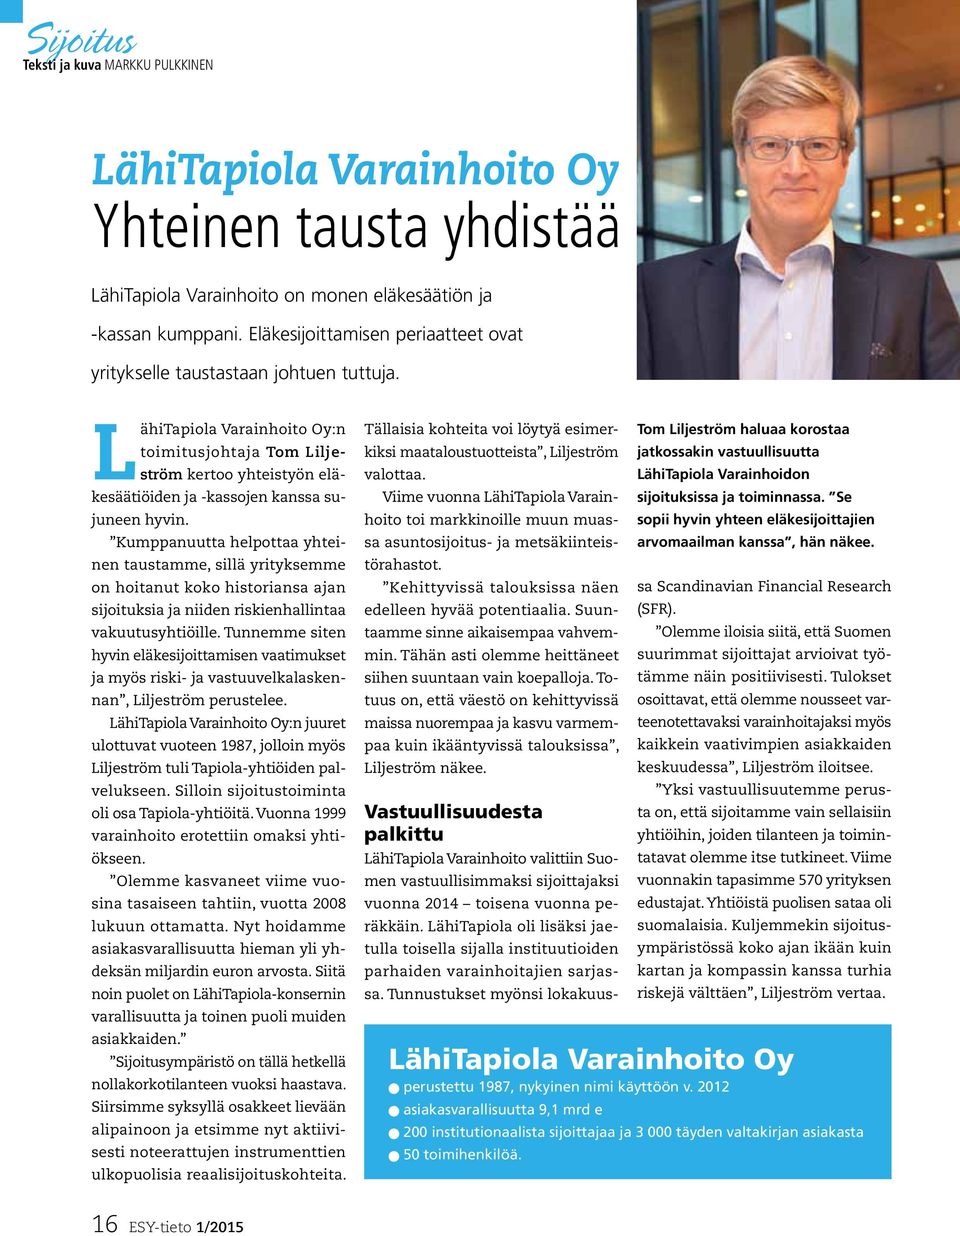 LähiTapiola Varainhoito Oy:n toimitusjohtaja Tom Liljeström kertoo yhteistyön eläkesäätiöiden ja -kassojen kanssa sujuneen hyvin.